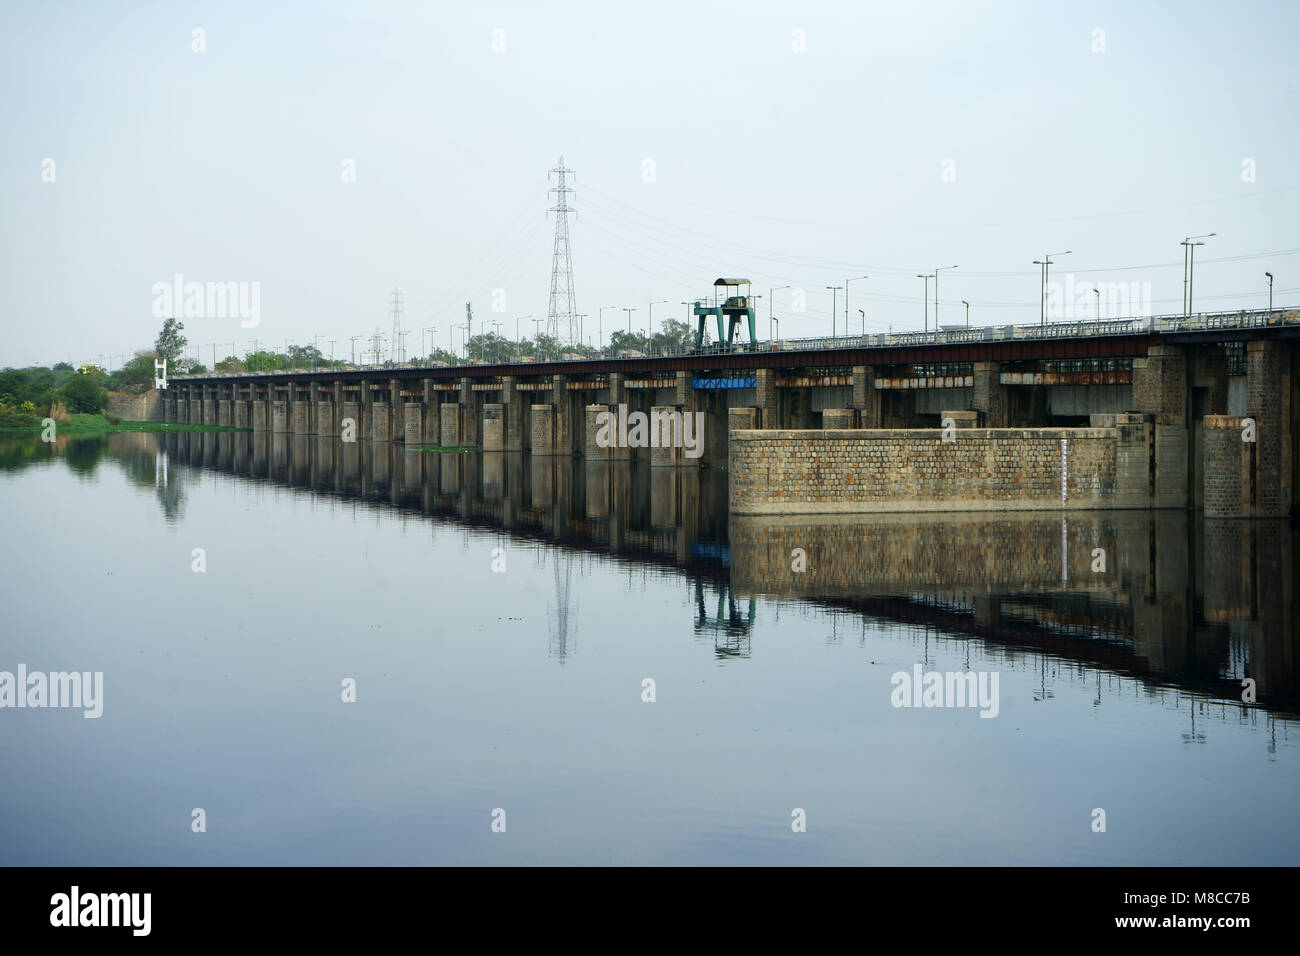 La rivière Yamuna lake et le pont, barrage hydroélectrique, New Delhi, Inde Banque D'Images